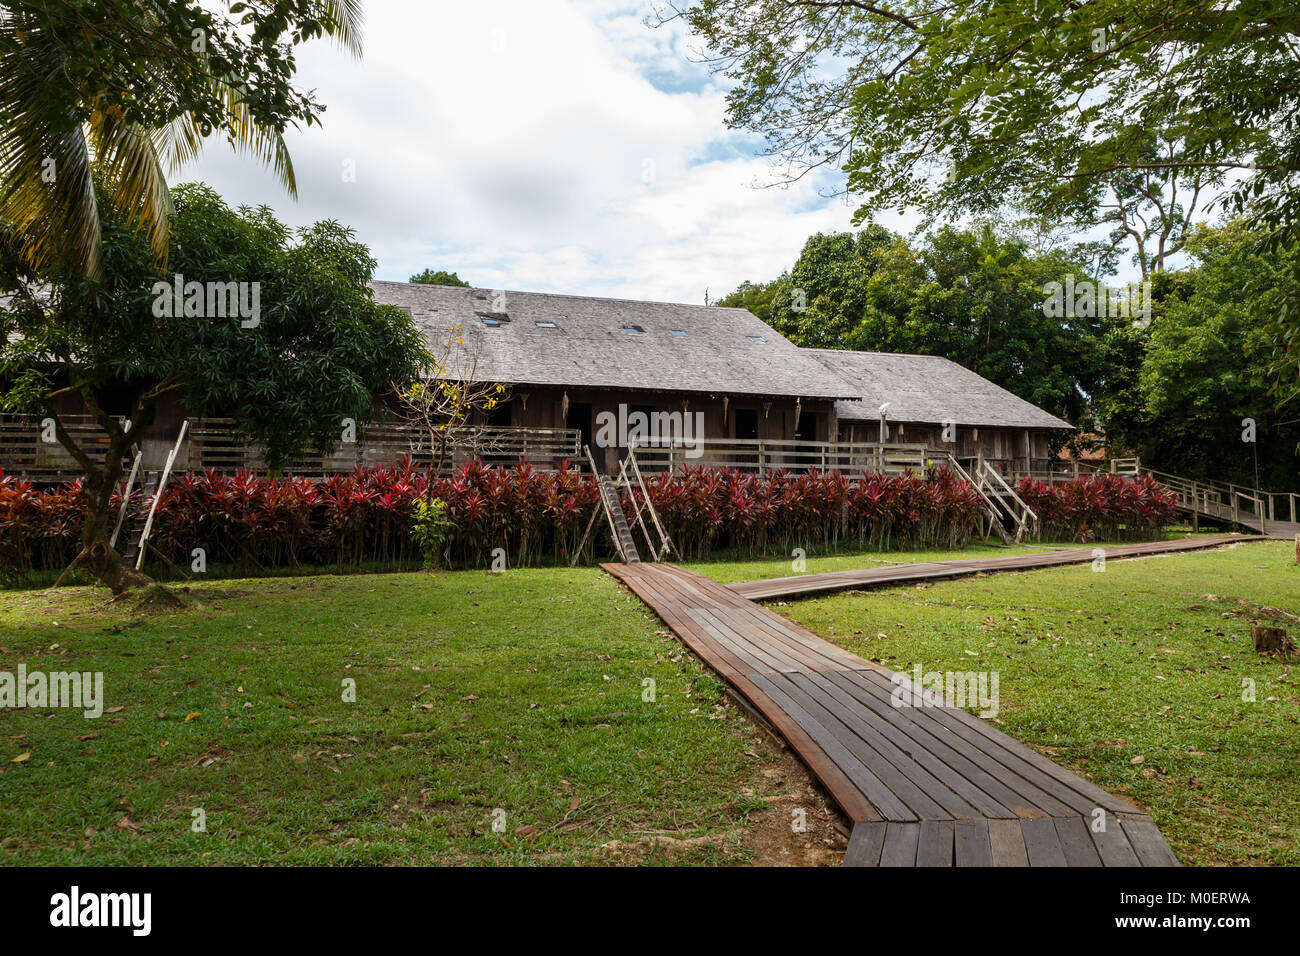 Iban longhouse. Dans les maisons en bois traditionnelles à Kuching Sarawak Culture Village. Borneo, Malaisie Banque D'Images